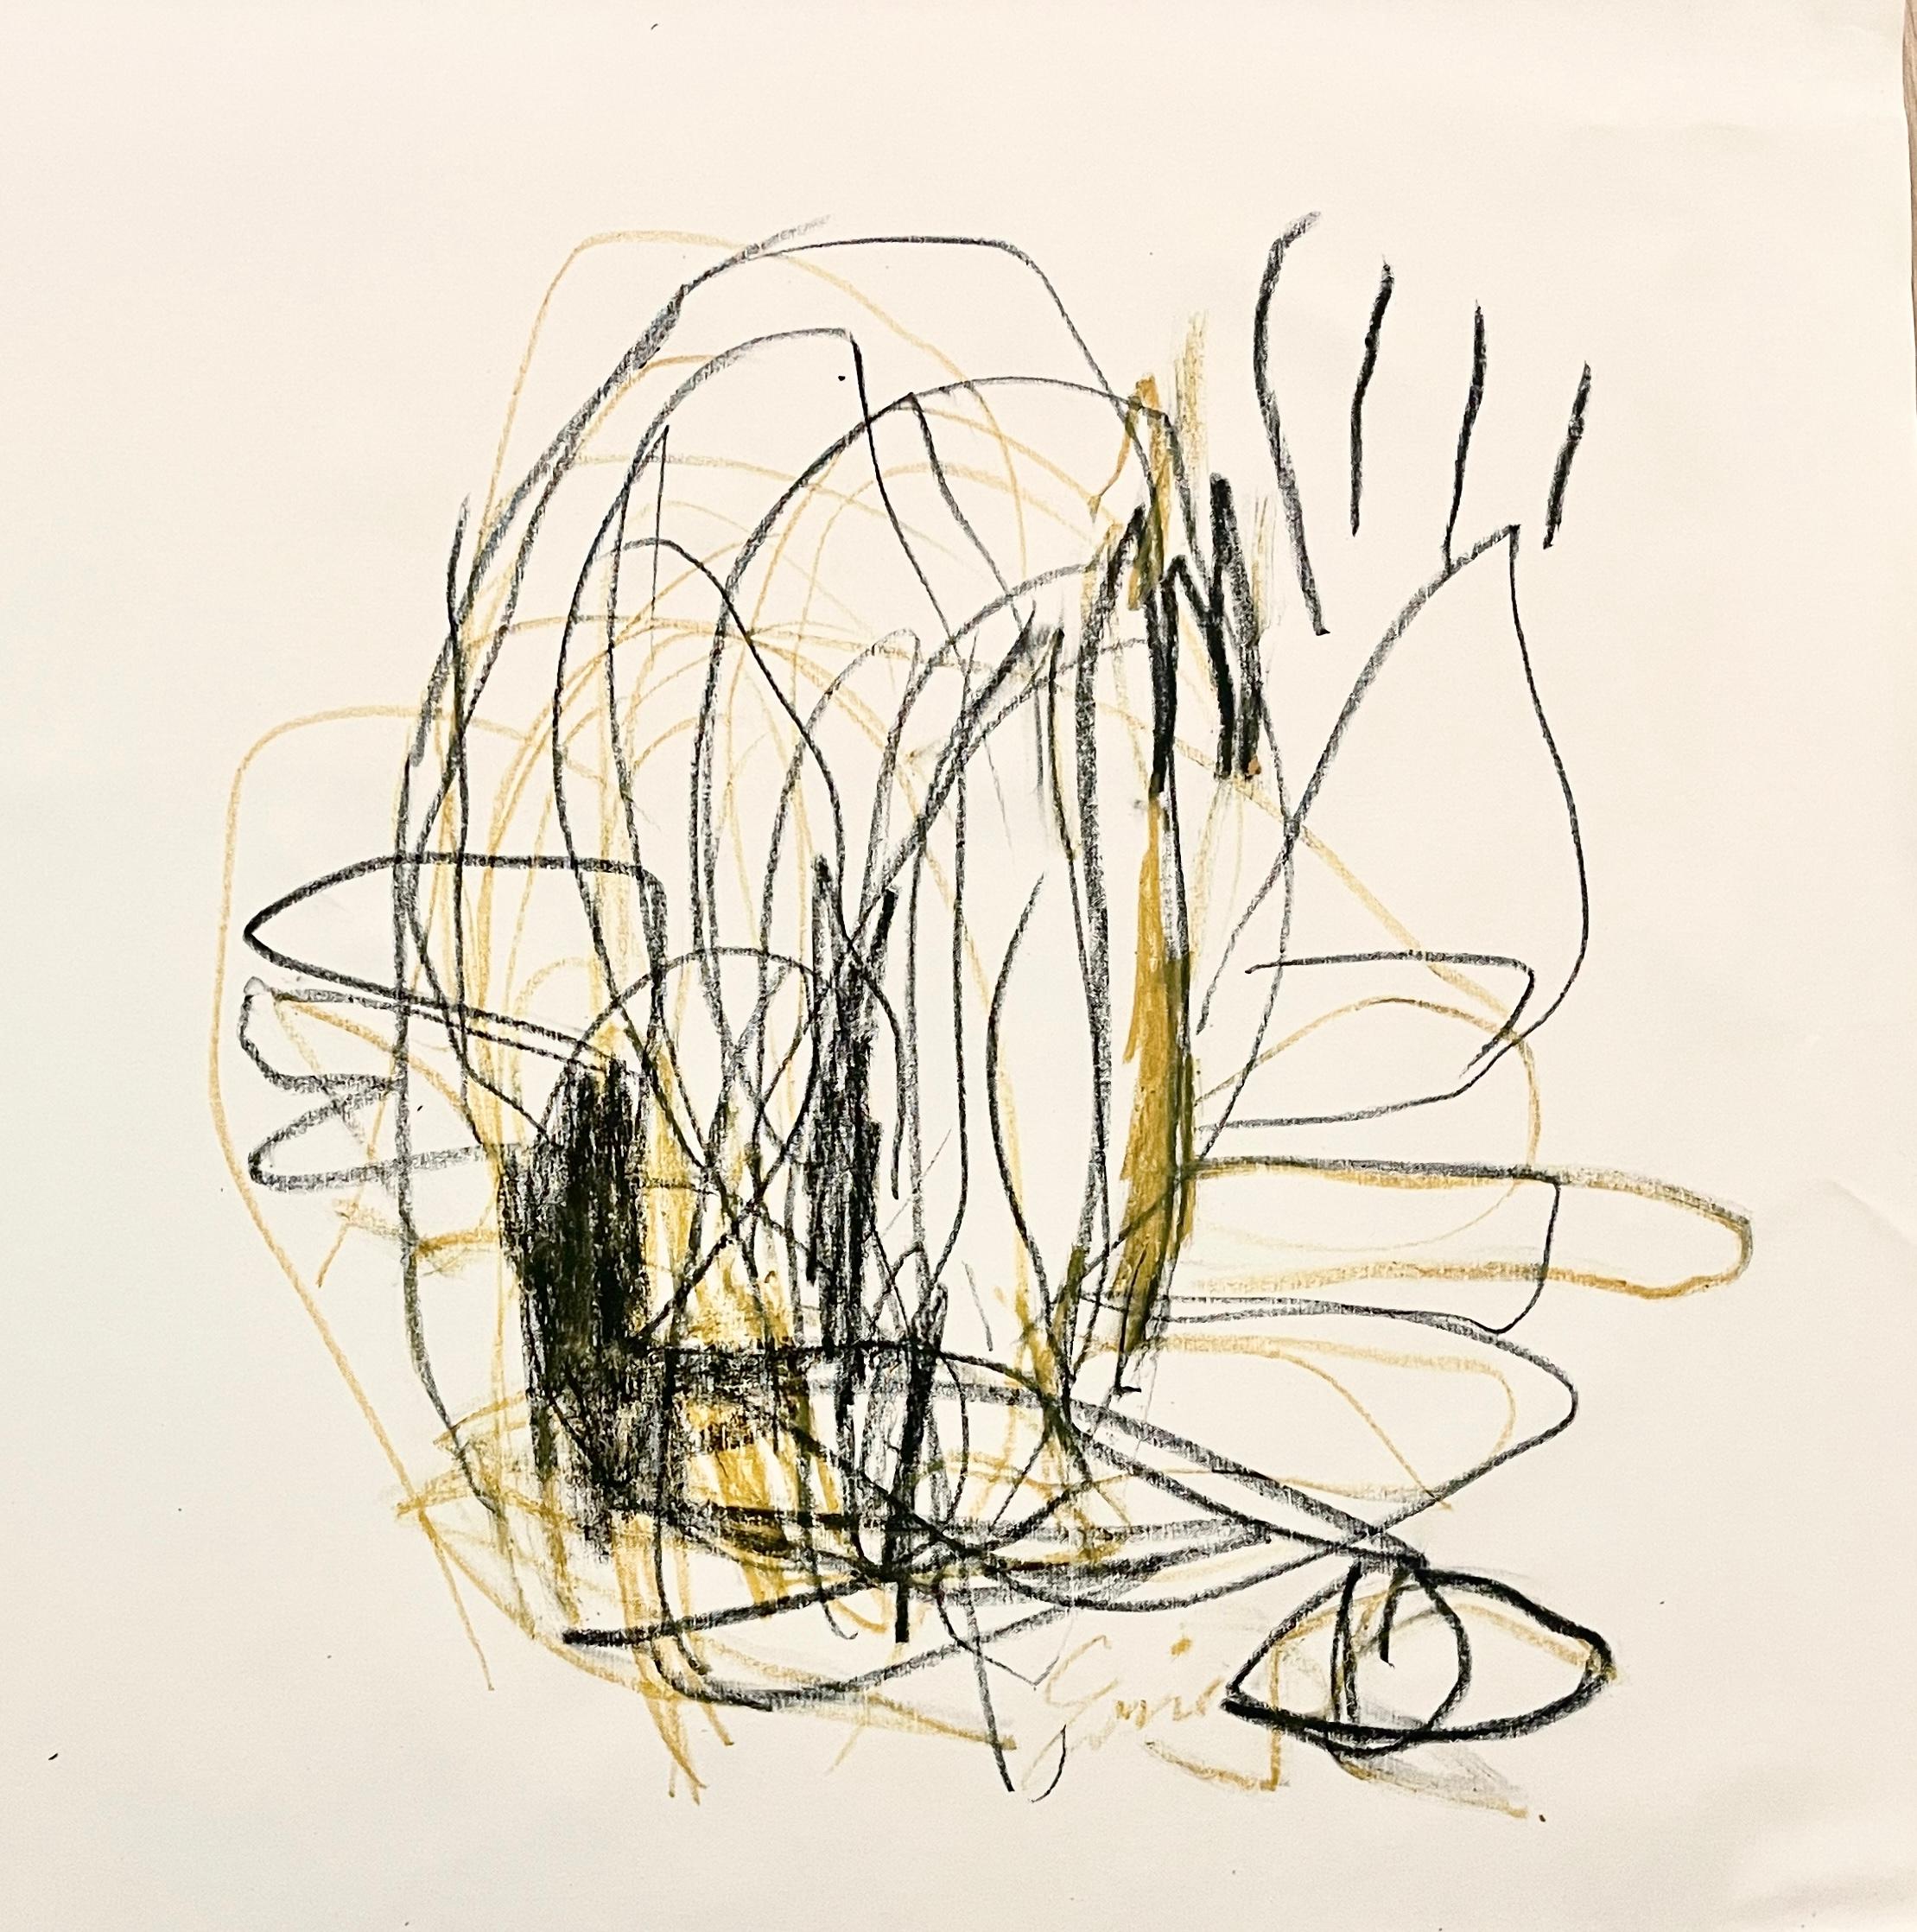 Abstrakter Expressionismus, skandinavisches Kunstwerk, schwarz-weiß-gelb, minimalistisch – Painting von Emmi Granlund